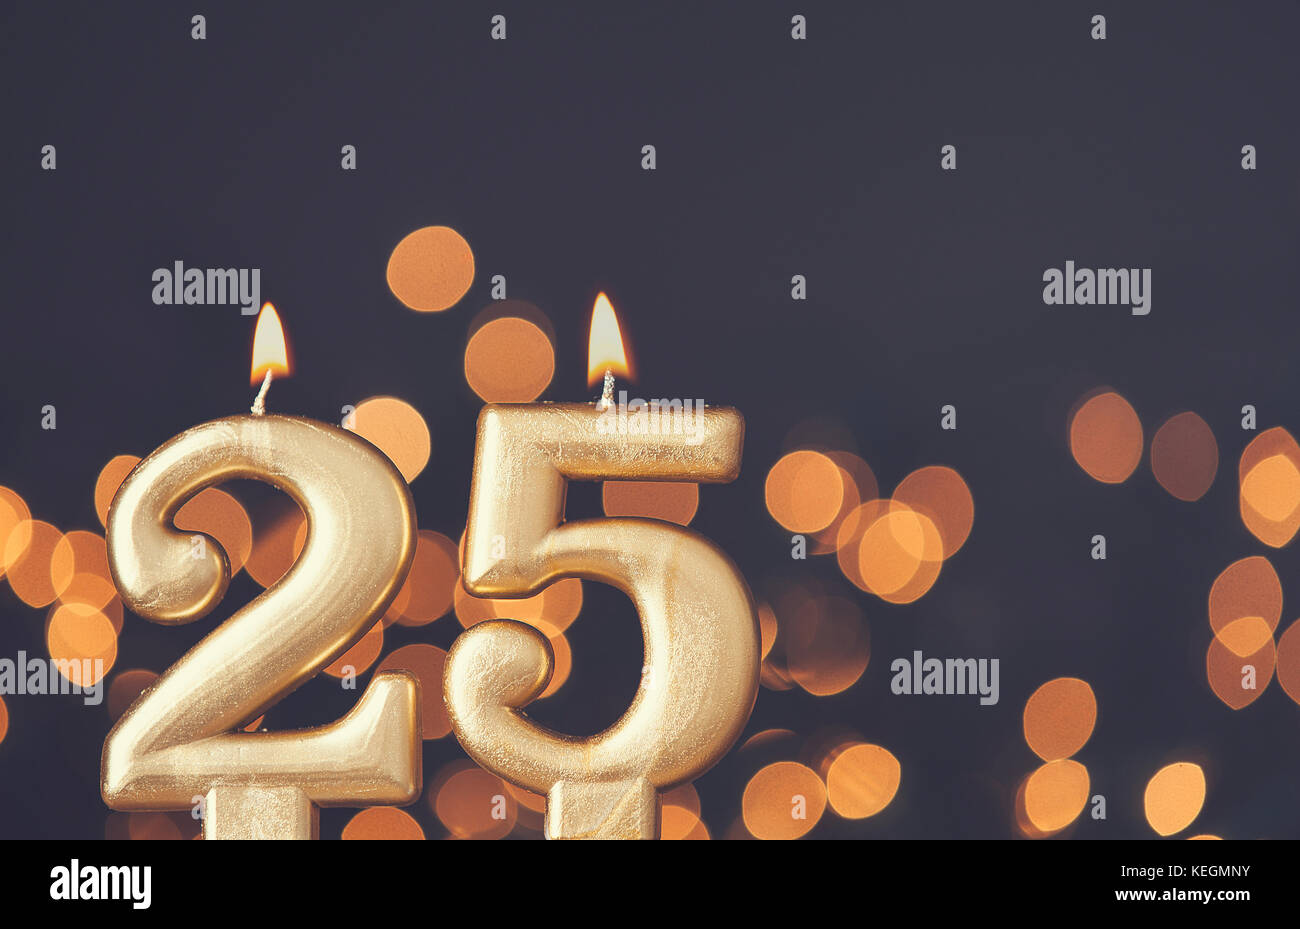 Numero gold 25 celebrazione candela contro sfocato sfondo luminoso Foto Stock